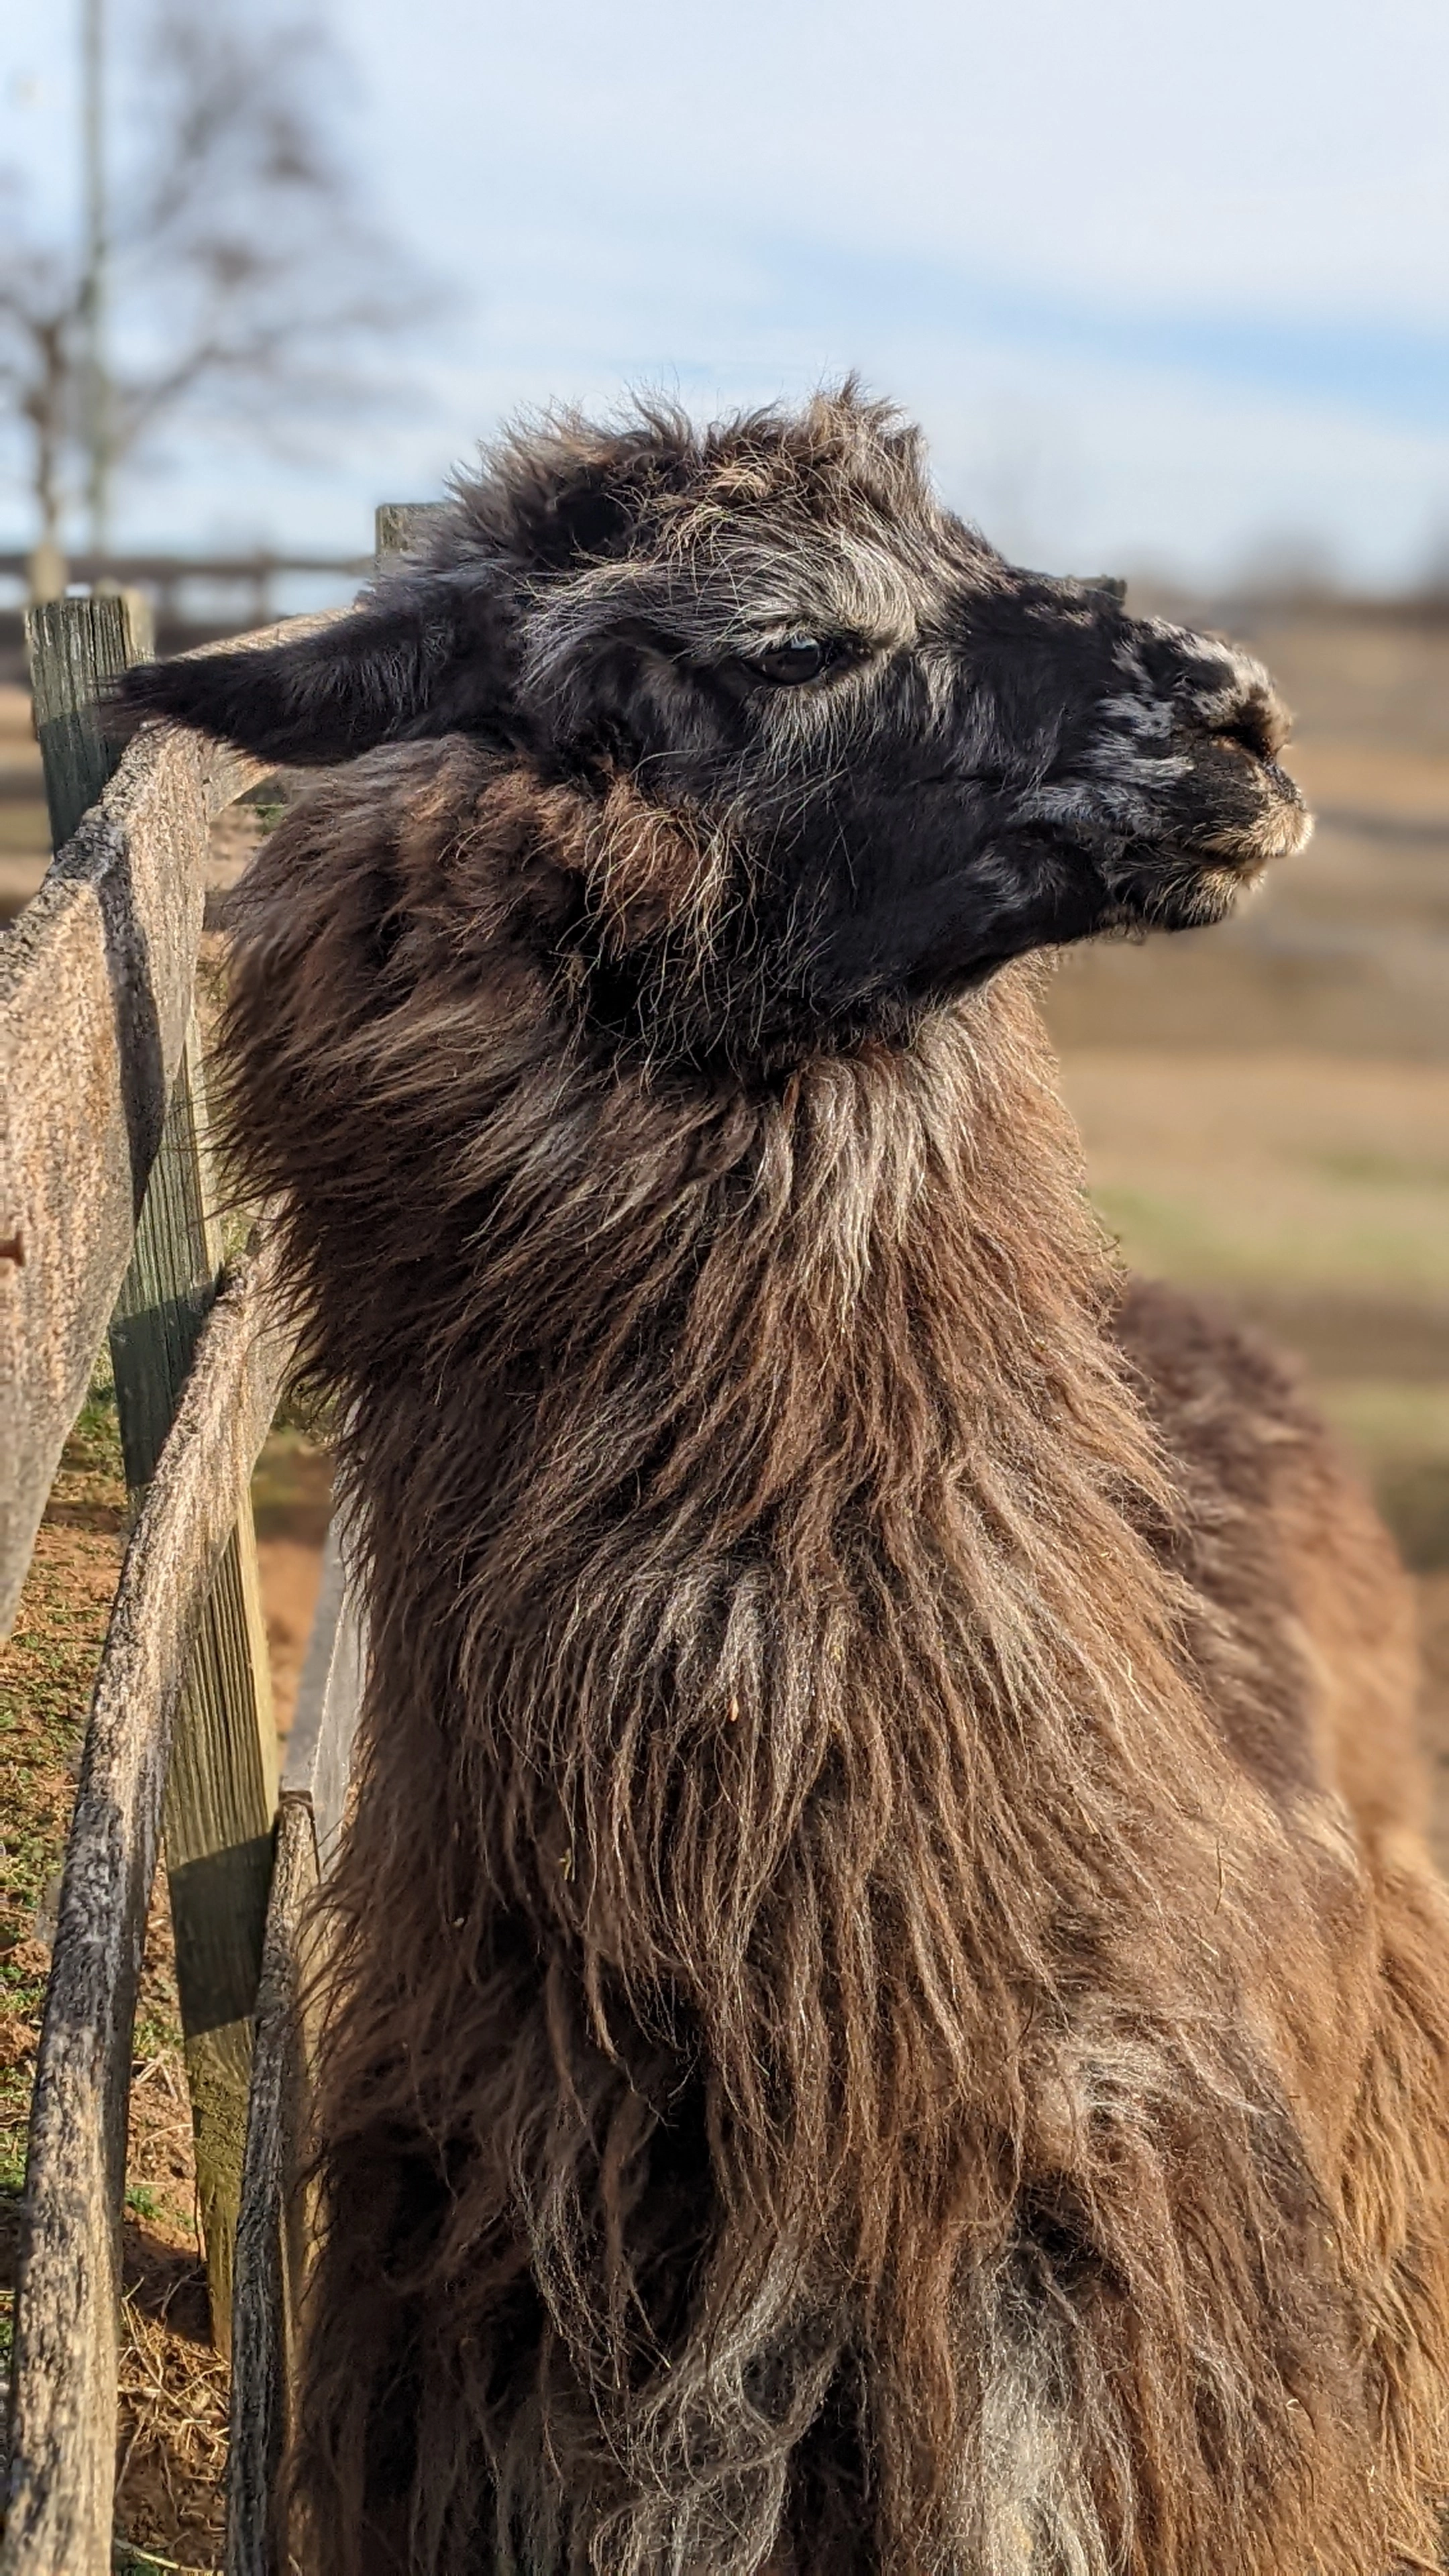 A portrait image of a llama named Kingsley